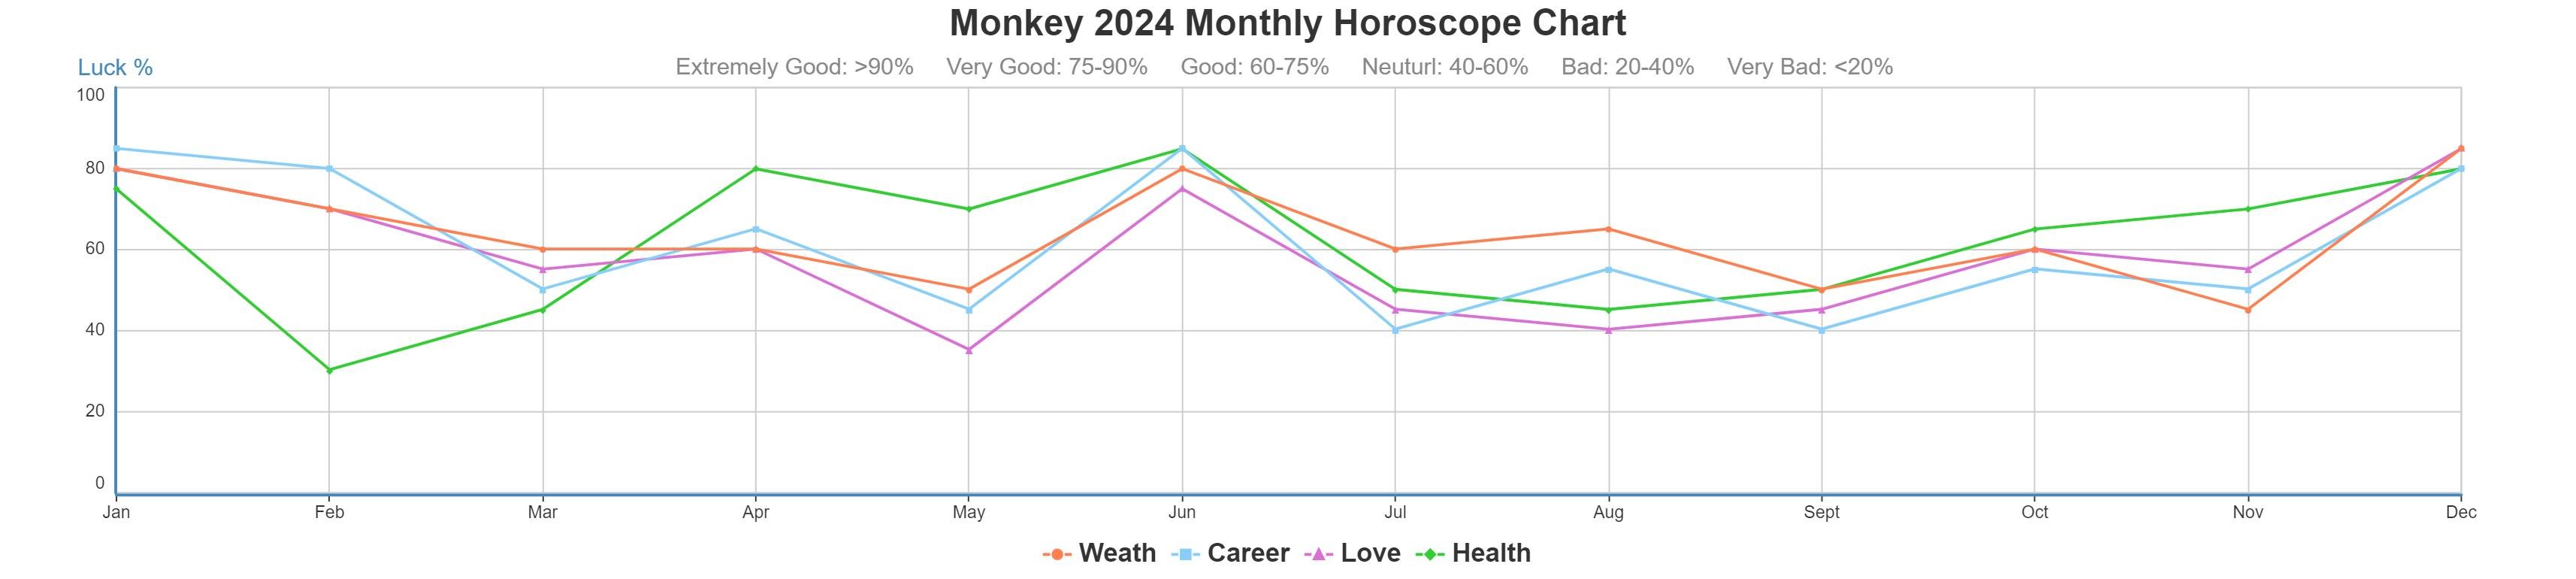 Monkey 2024 monthly horoscope